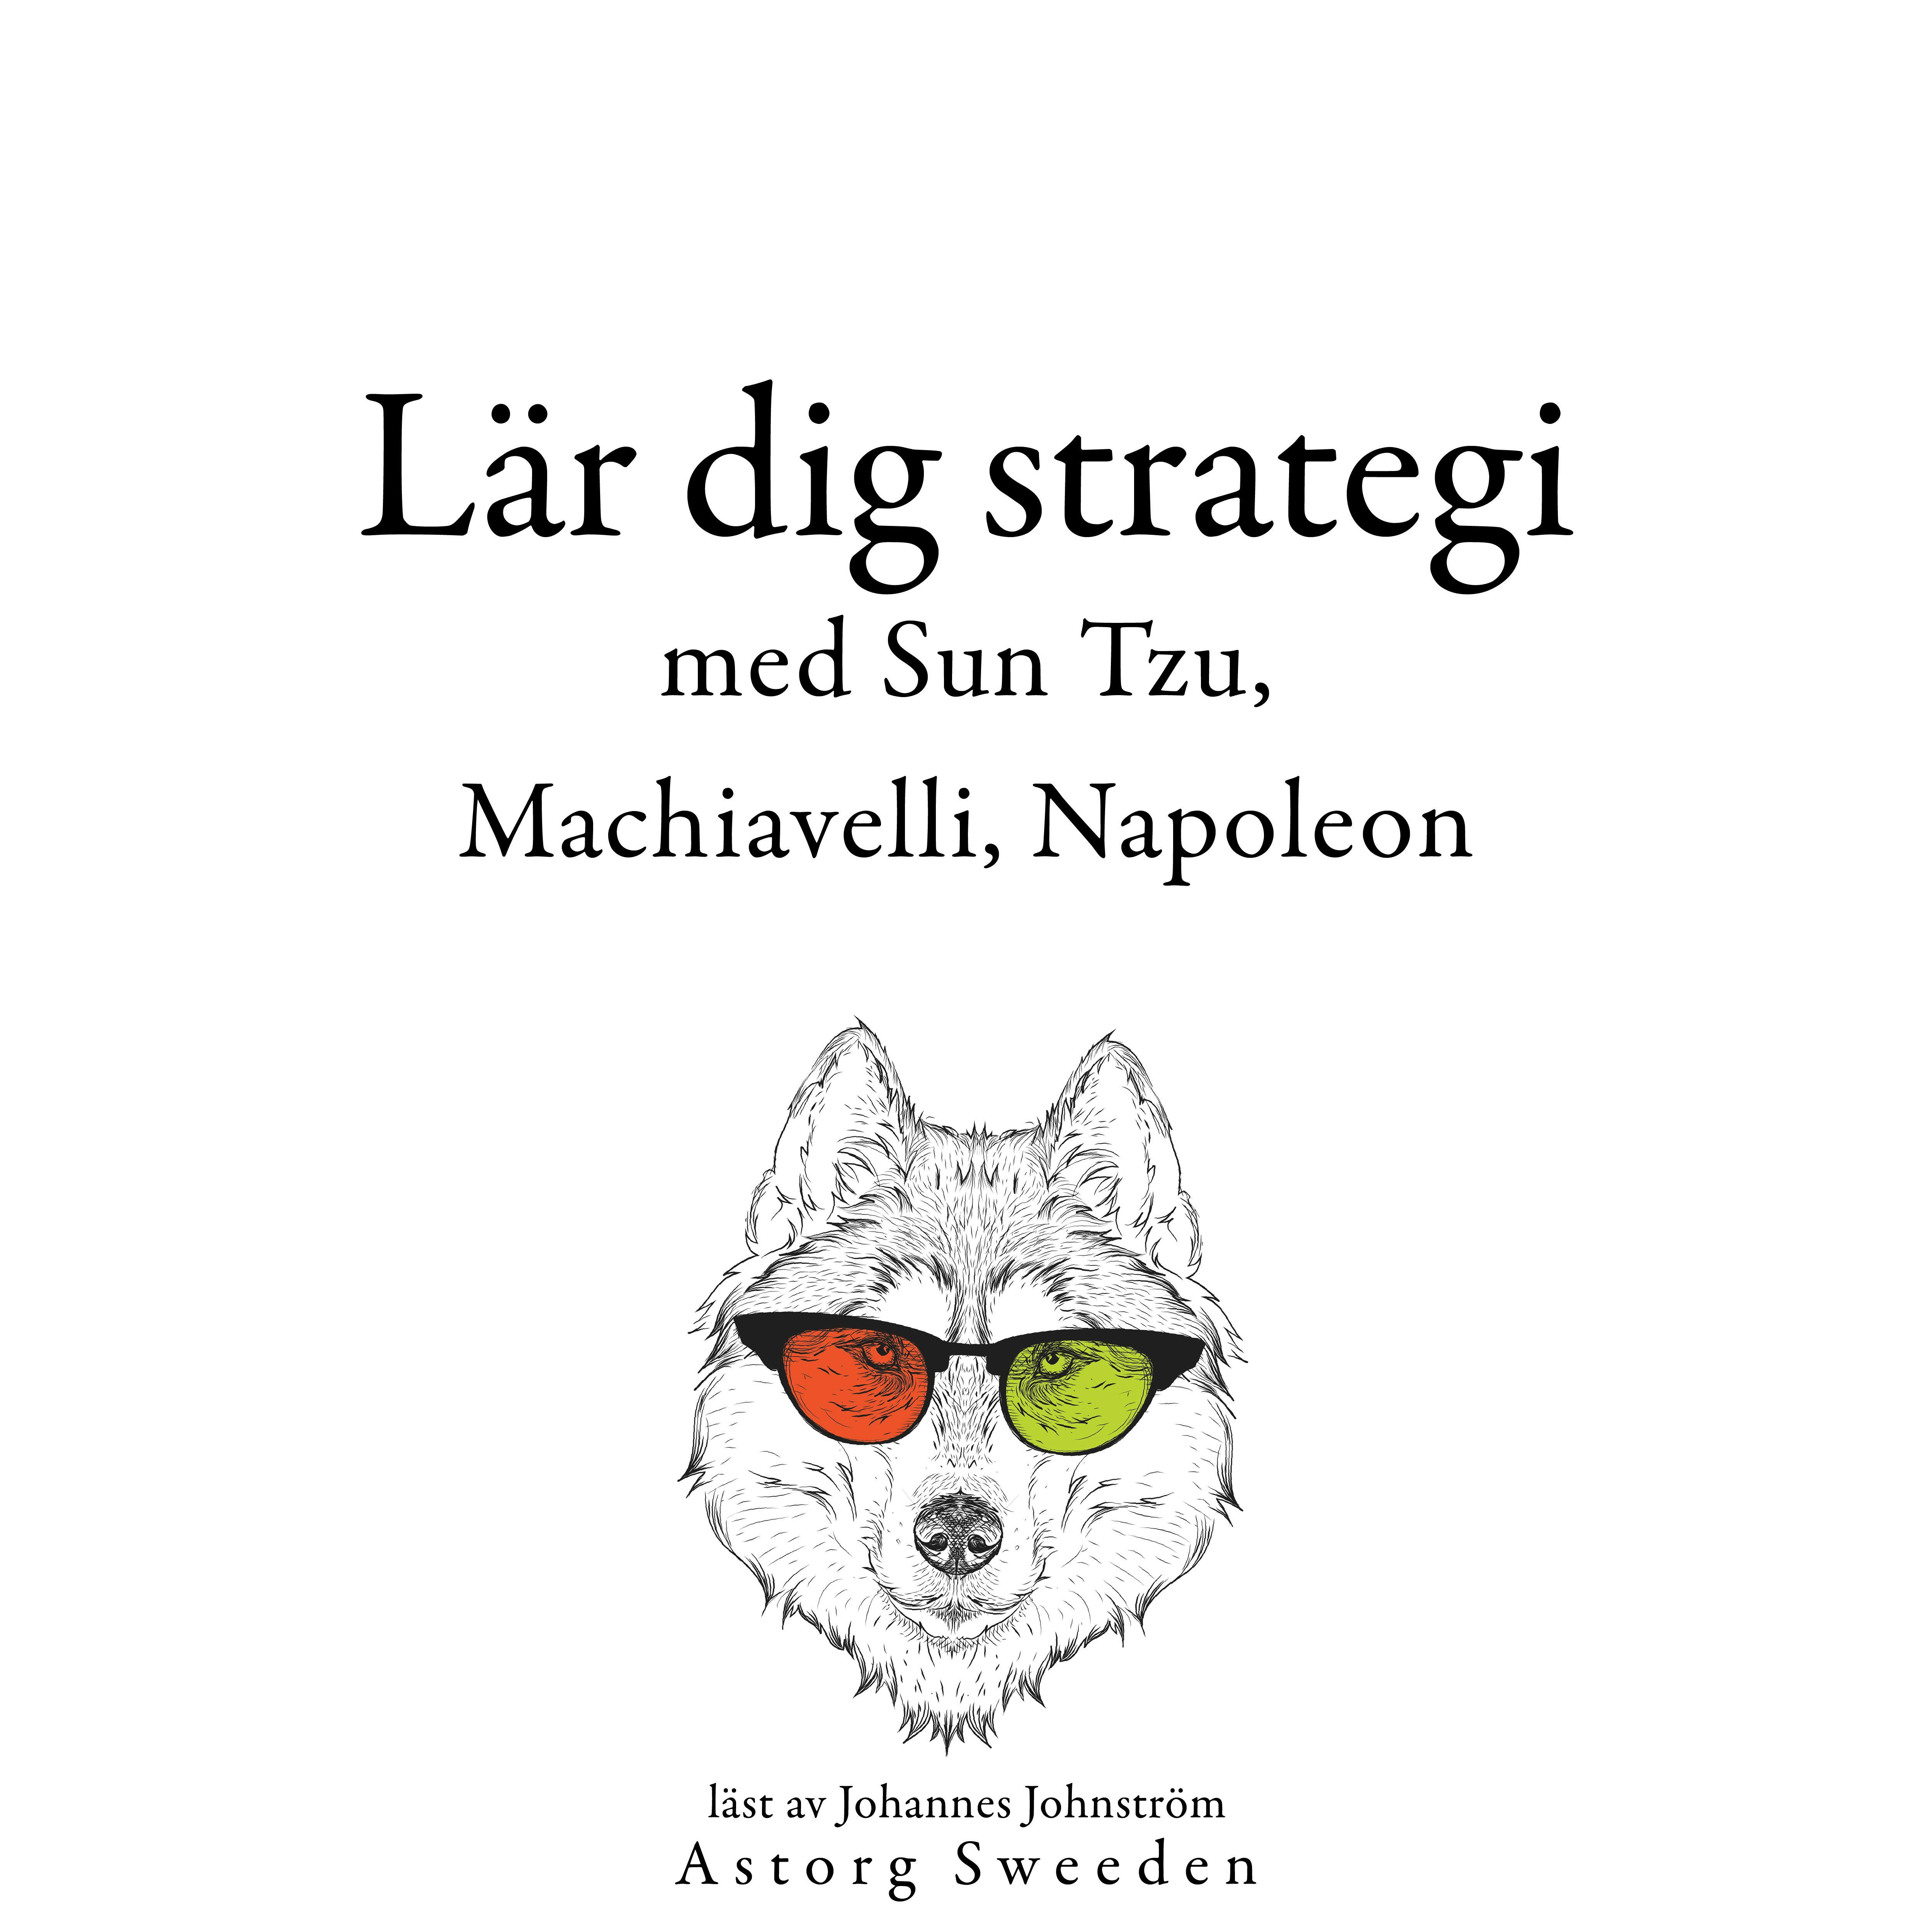 Lär dig strategi med Sun Tzu, Machiavelli, Napoleon ...: Samling av de bästa citat - undefined